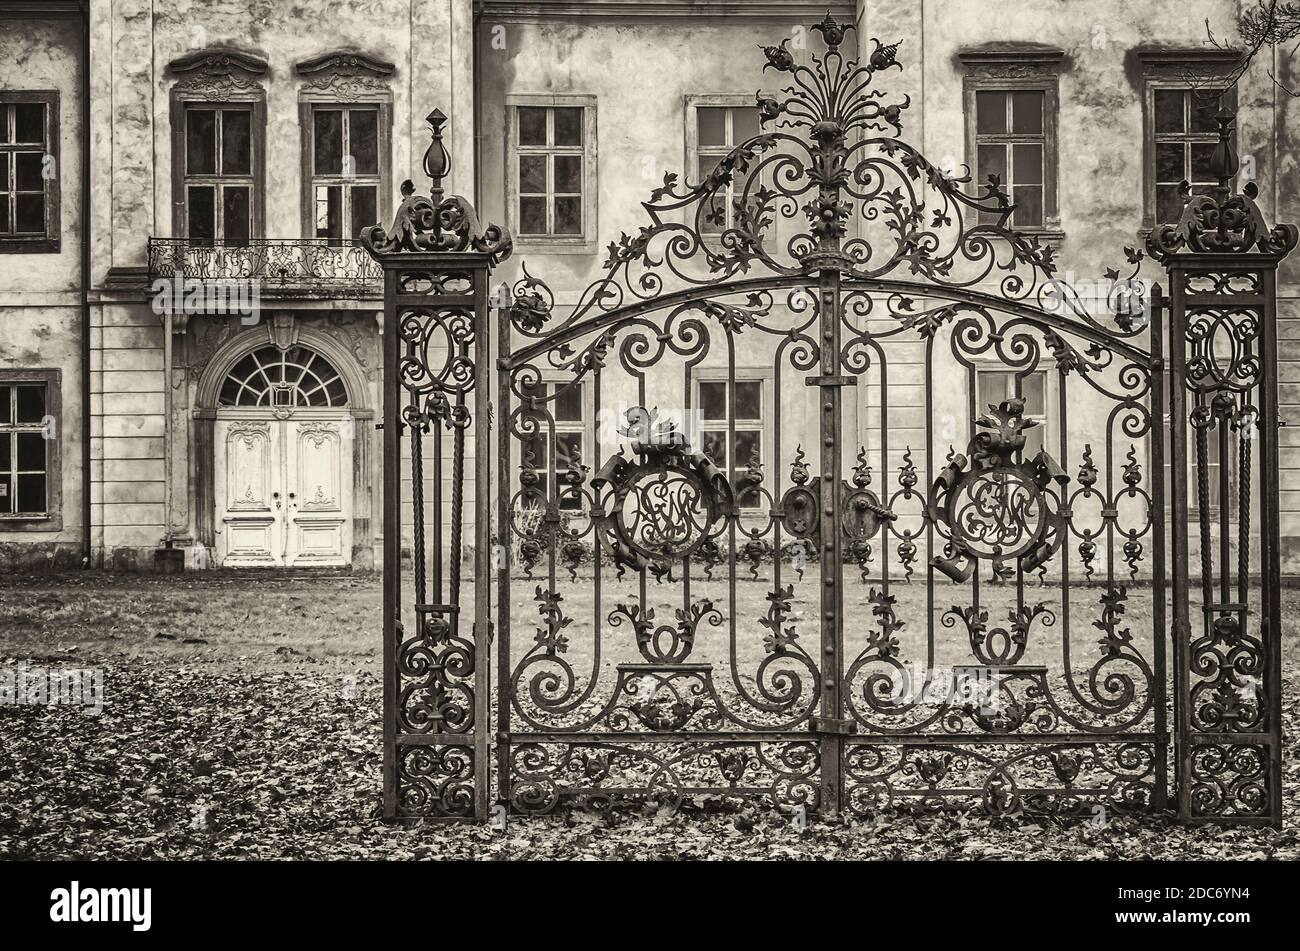 Un vecchio cancello di ferro è situato di fronte ad una casa padronale barocca dilapido, Ivenack Manor, Meclemburgo Pomerania, Germania. Foto Stock